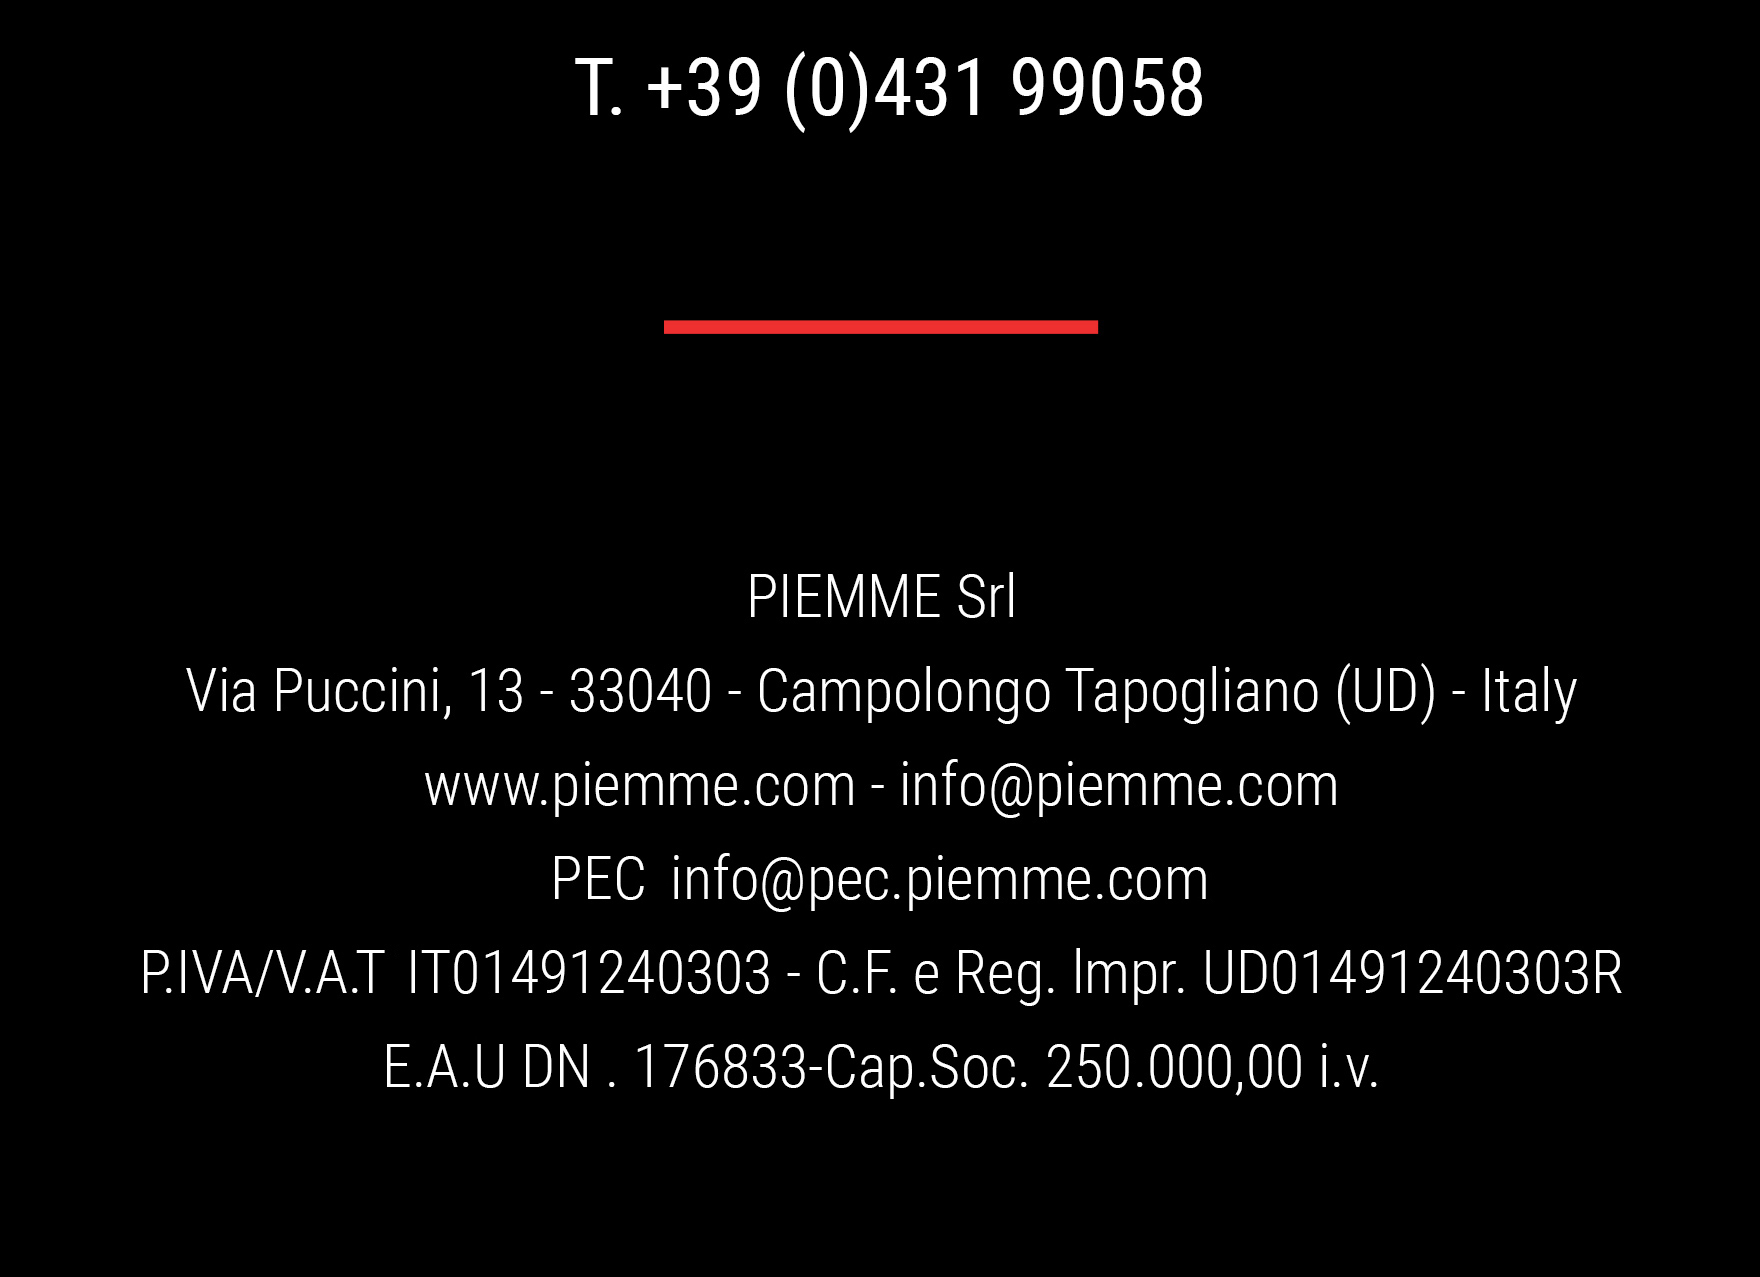 footer PIEMME S.r.l. - via Puccini 13 33040 Campologno Tapogliano UD